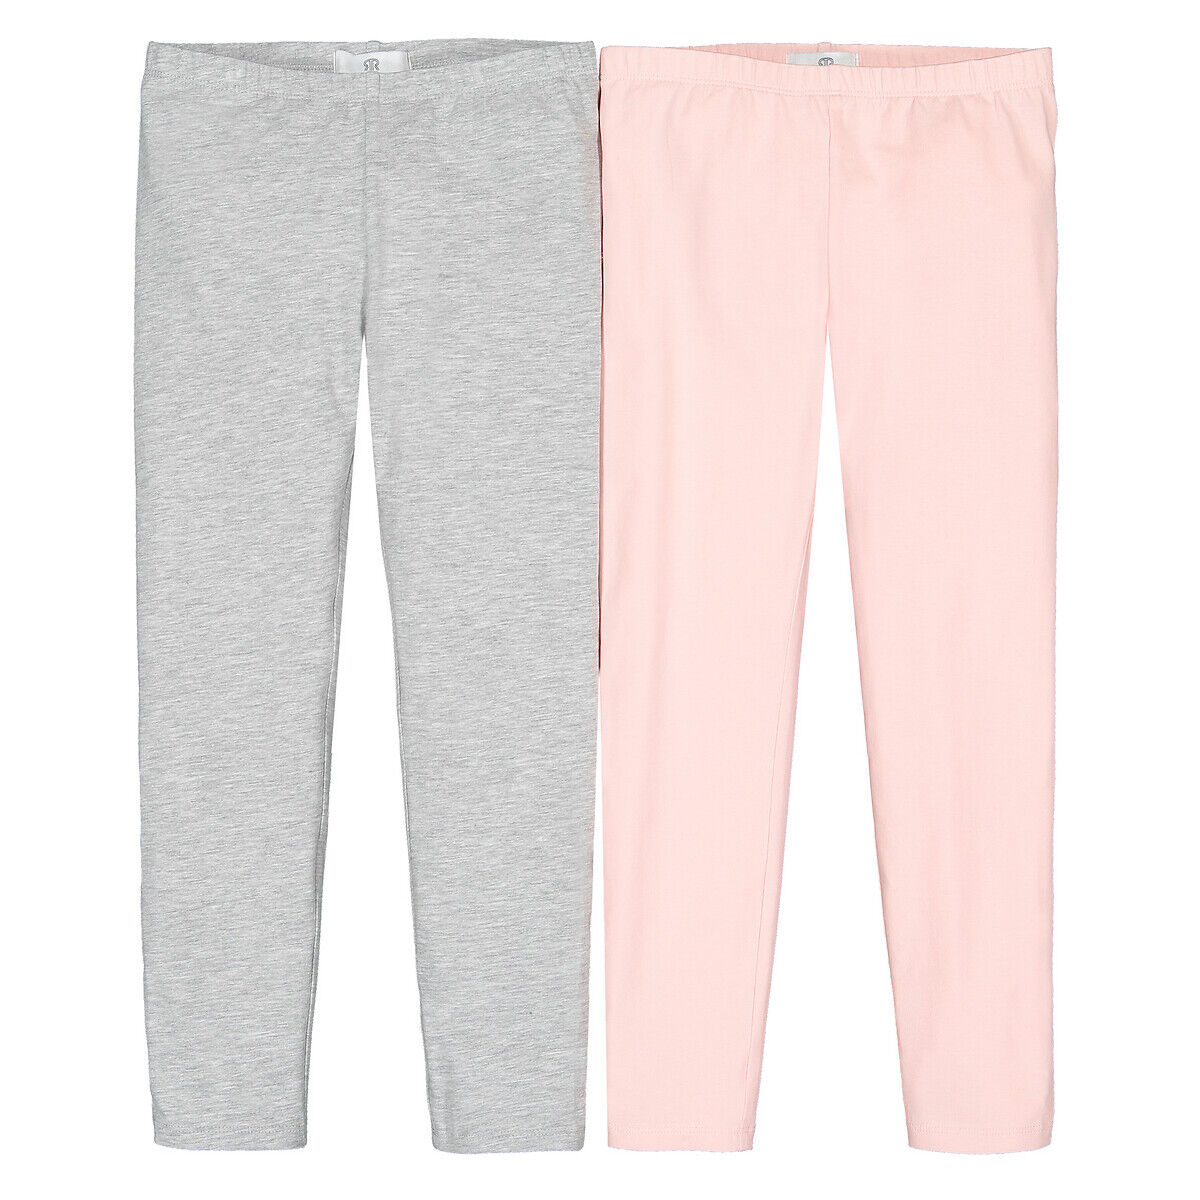 La Redoute Collections Lote de 2 leggings lisos, em algodão bio, 3-12 anos   rosa + cinza mesclado